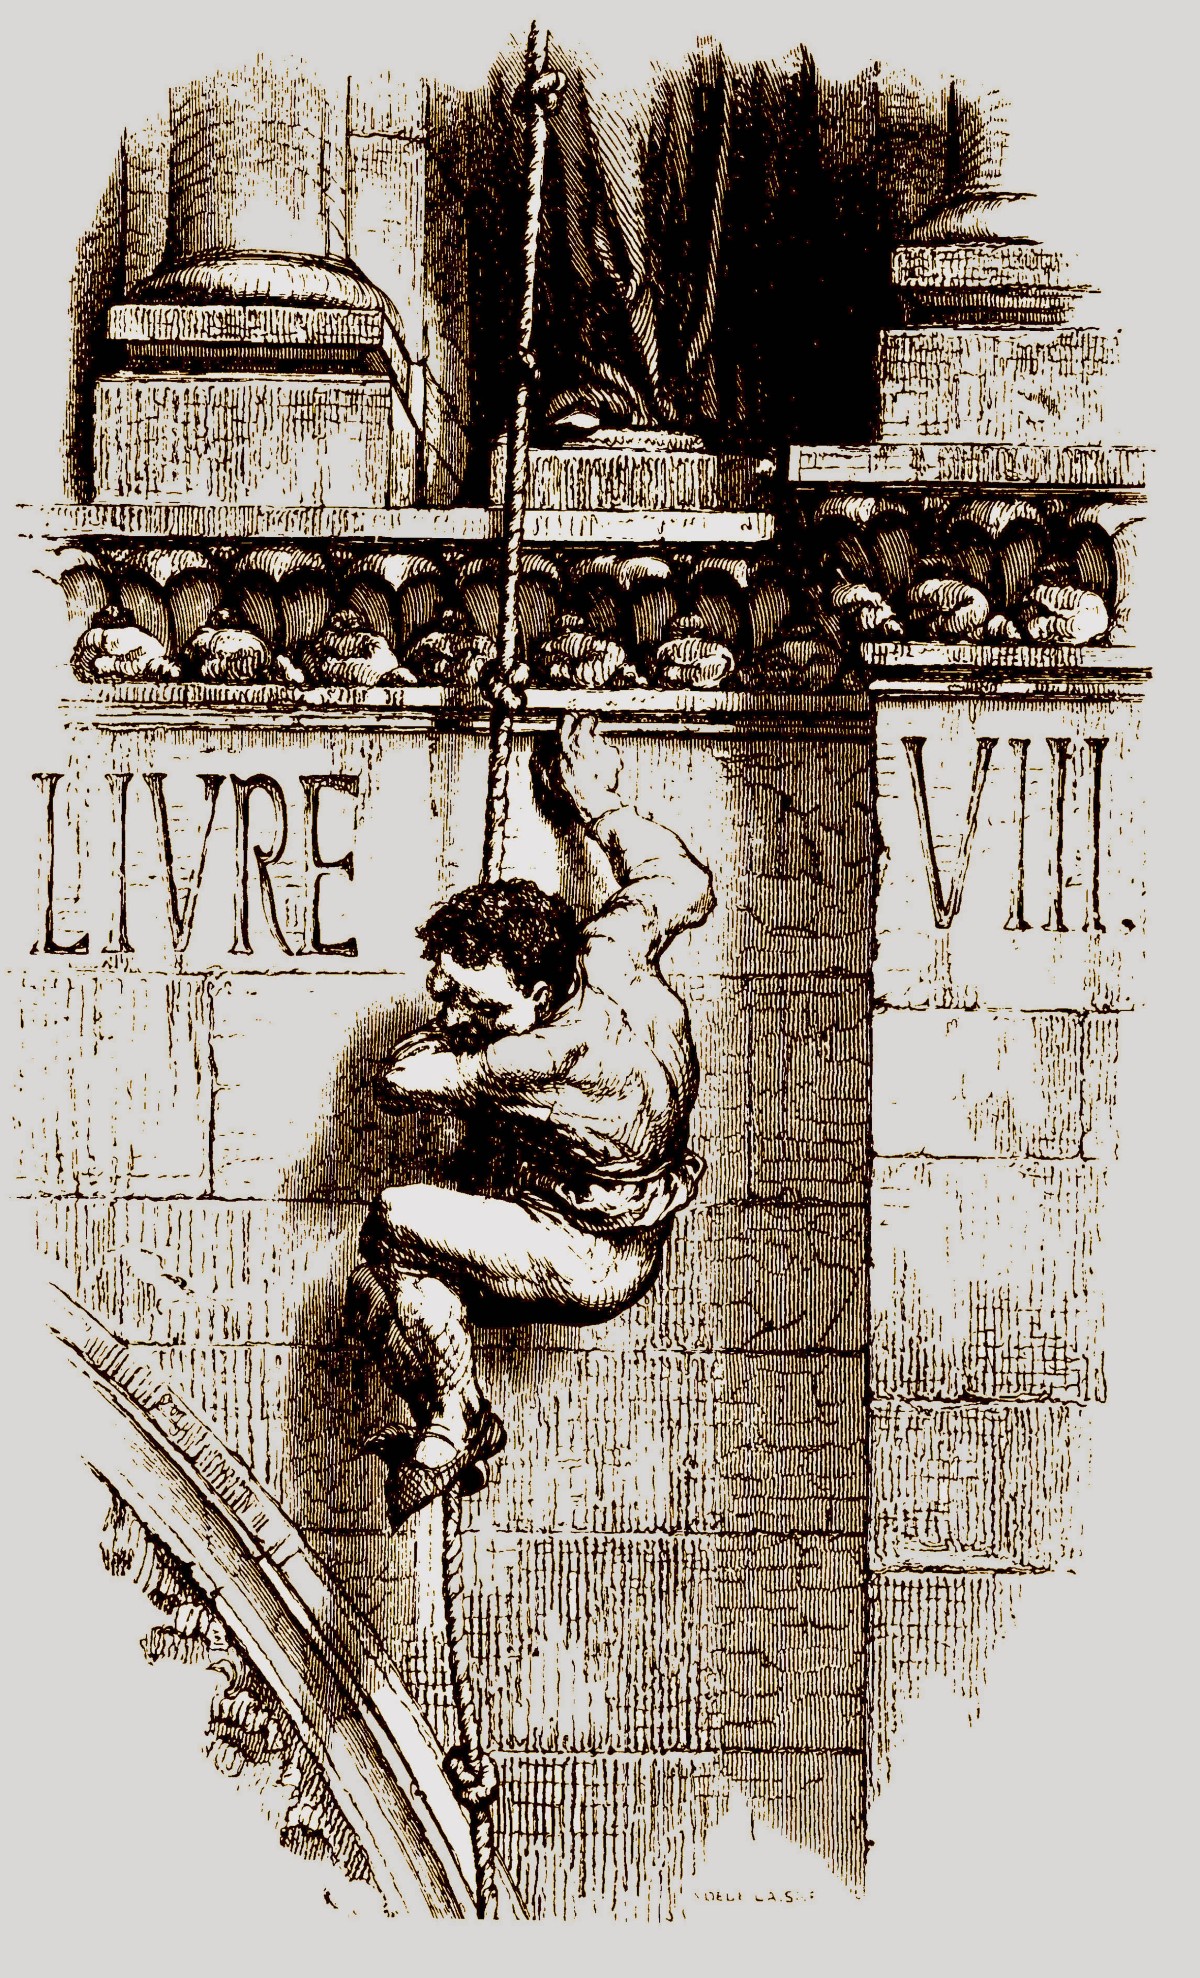 Quasimodo am Turm von Notre Dame in Paris, 1840.